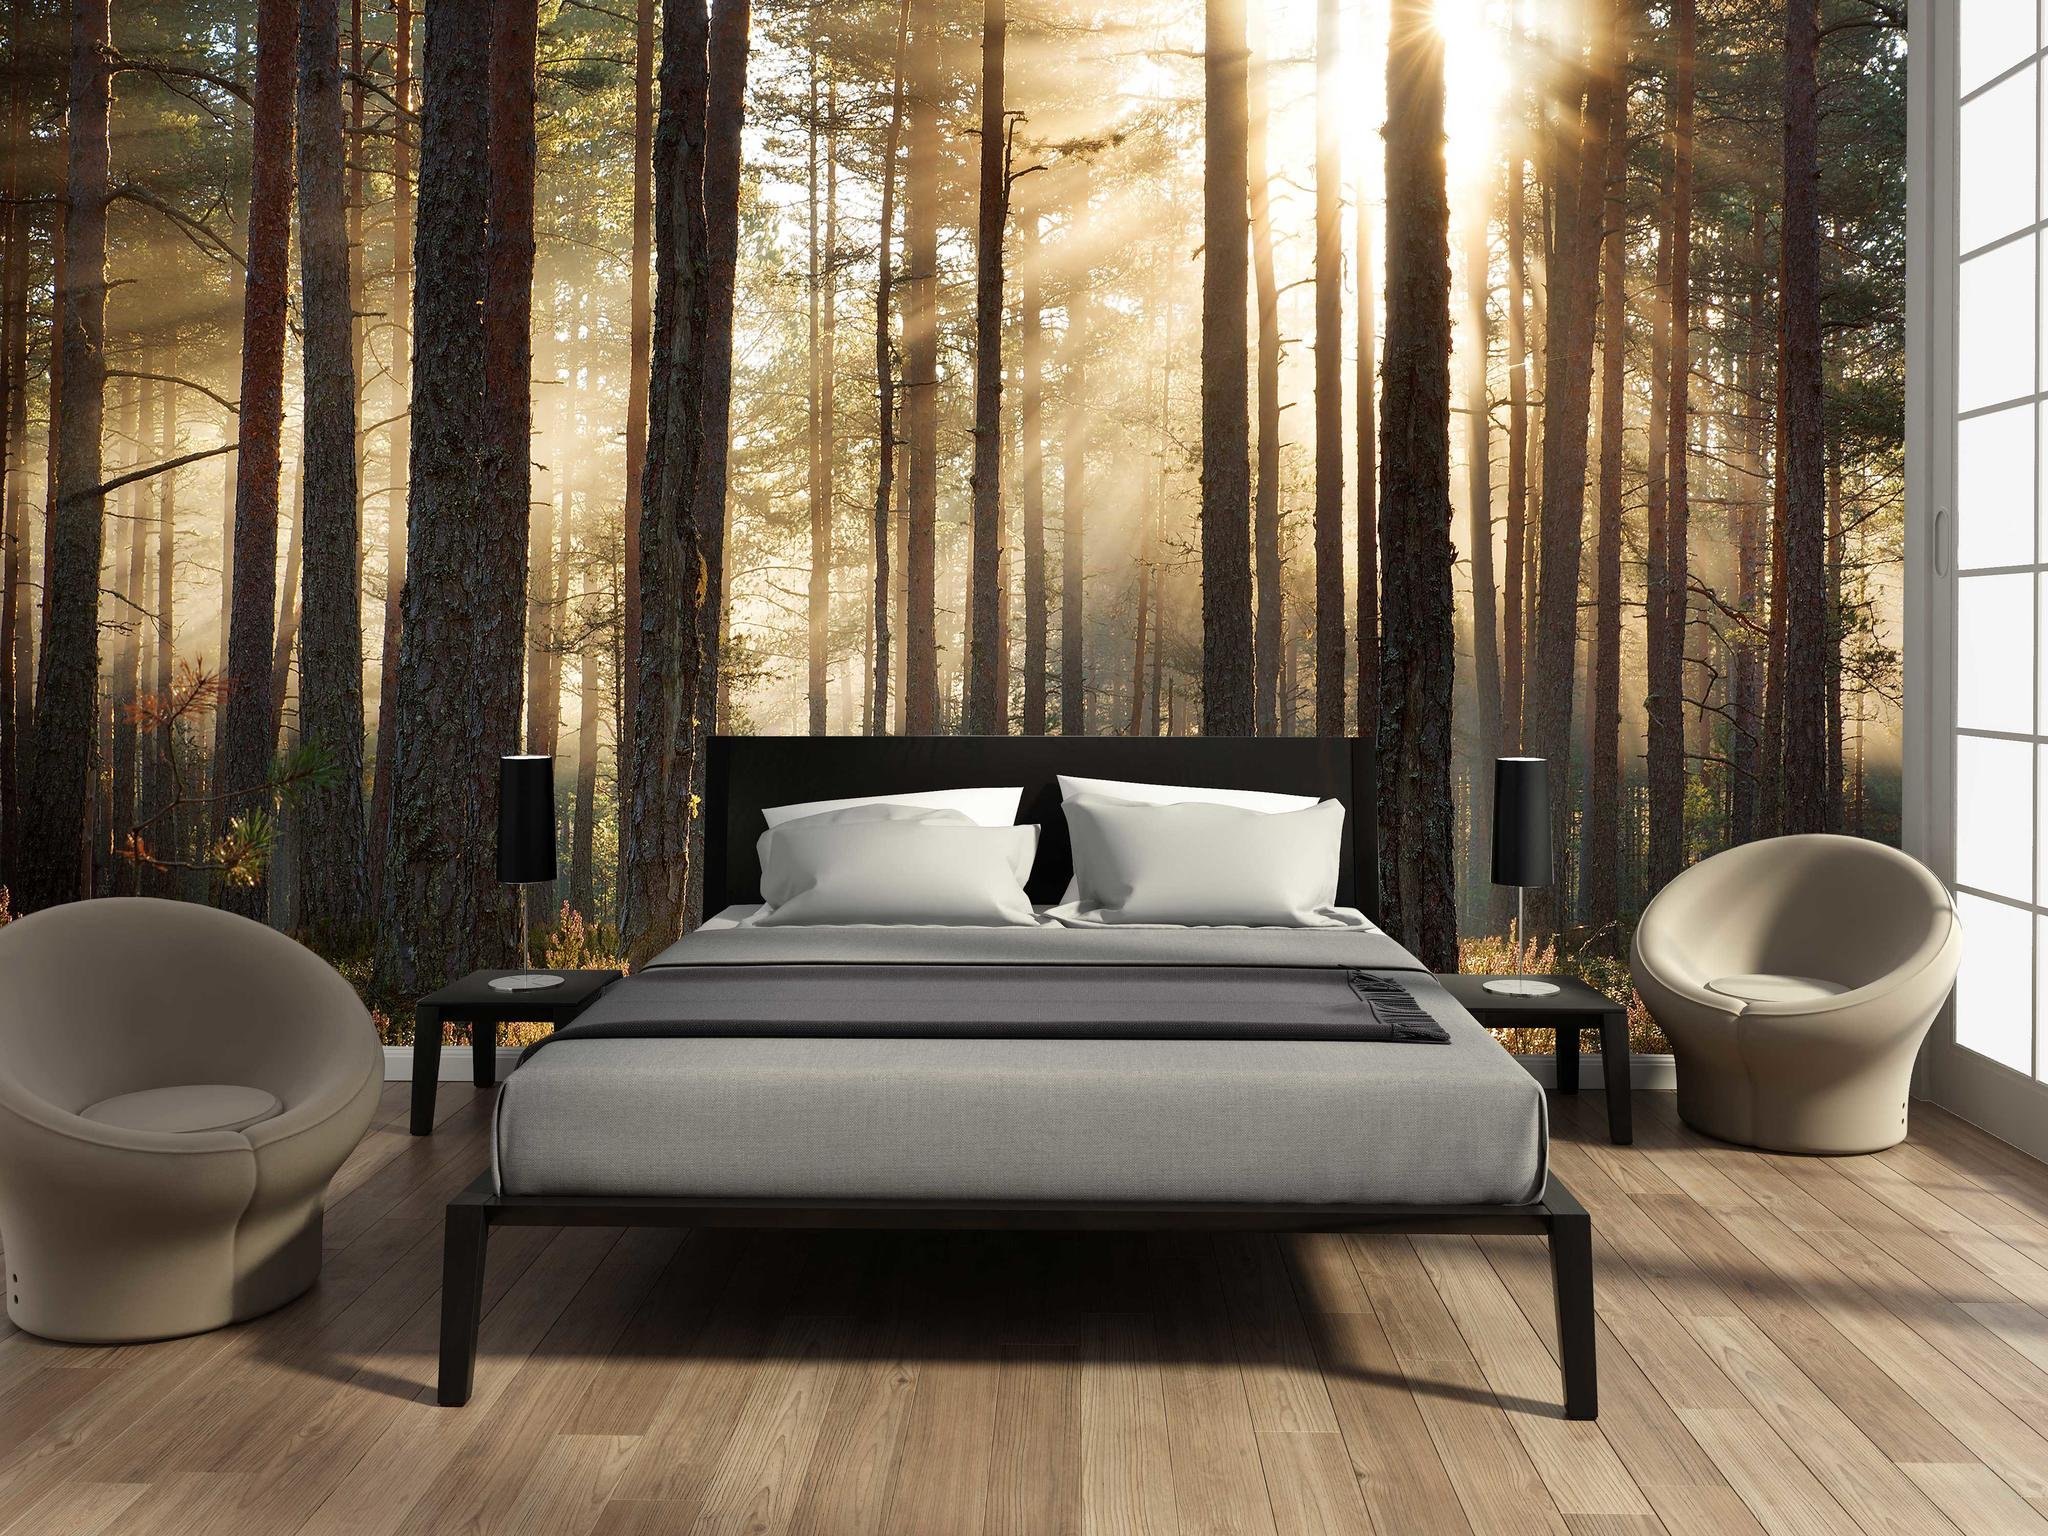 Обои на стену лес. Спальня с лесом. Спальня в стиле леса. Фотообои в интерьере спальни. Комната в стиле природы.